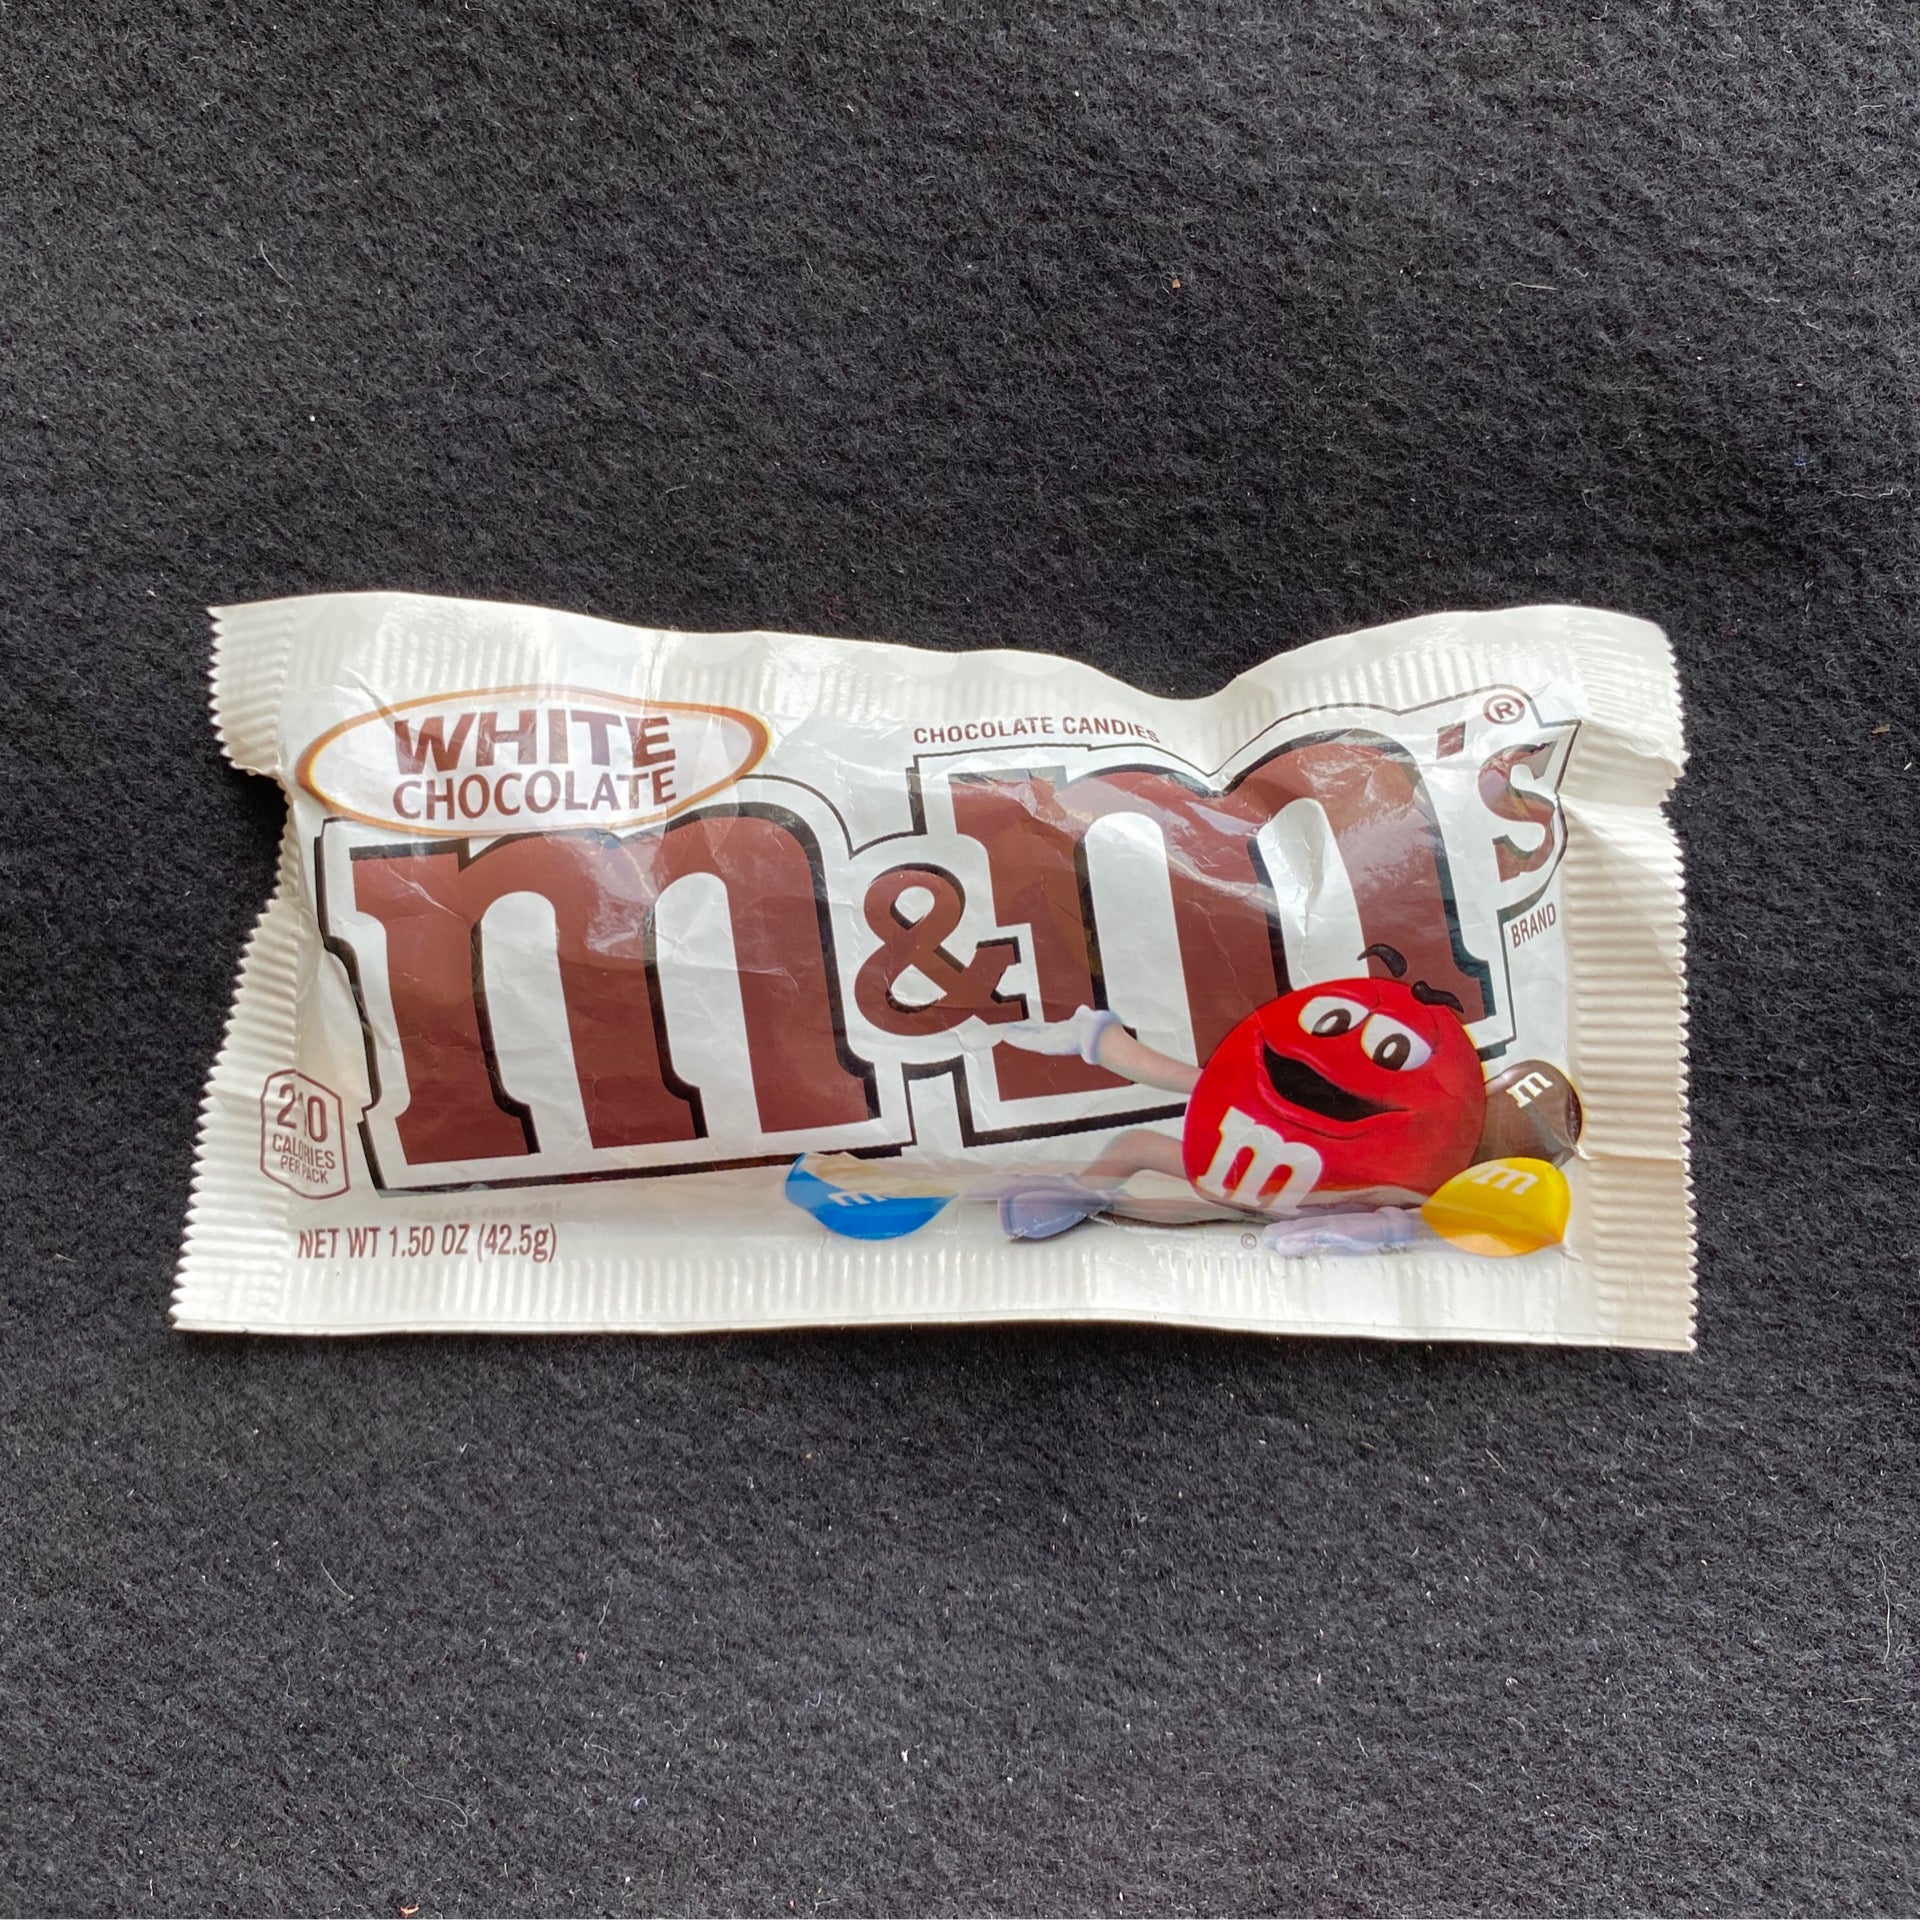 White chocolate - M&M's - 42.5 g